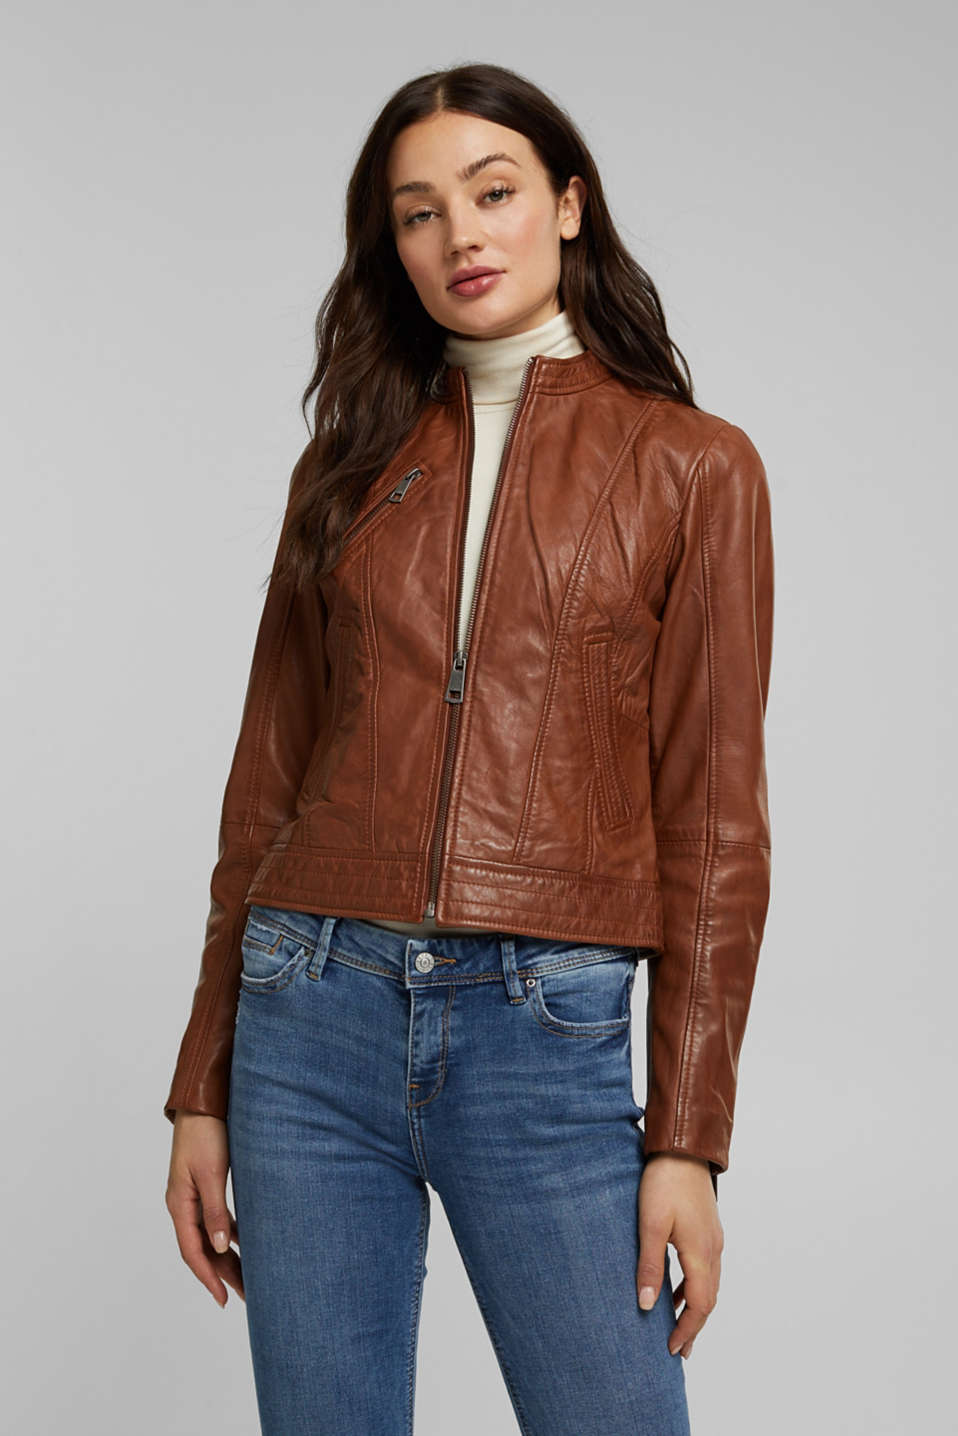 Esprit - 100% leather biker jacket at our Online Shop